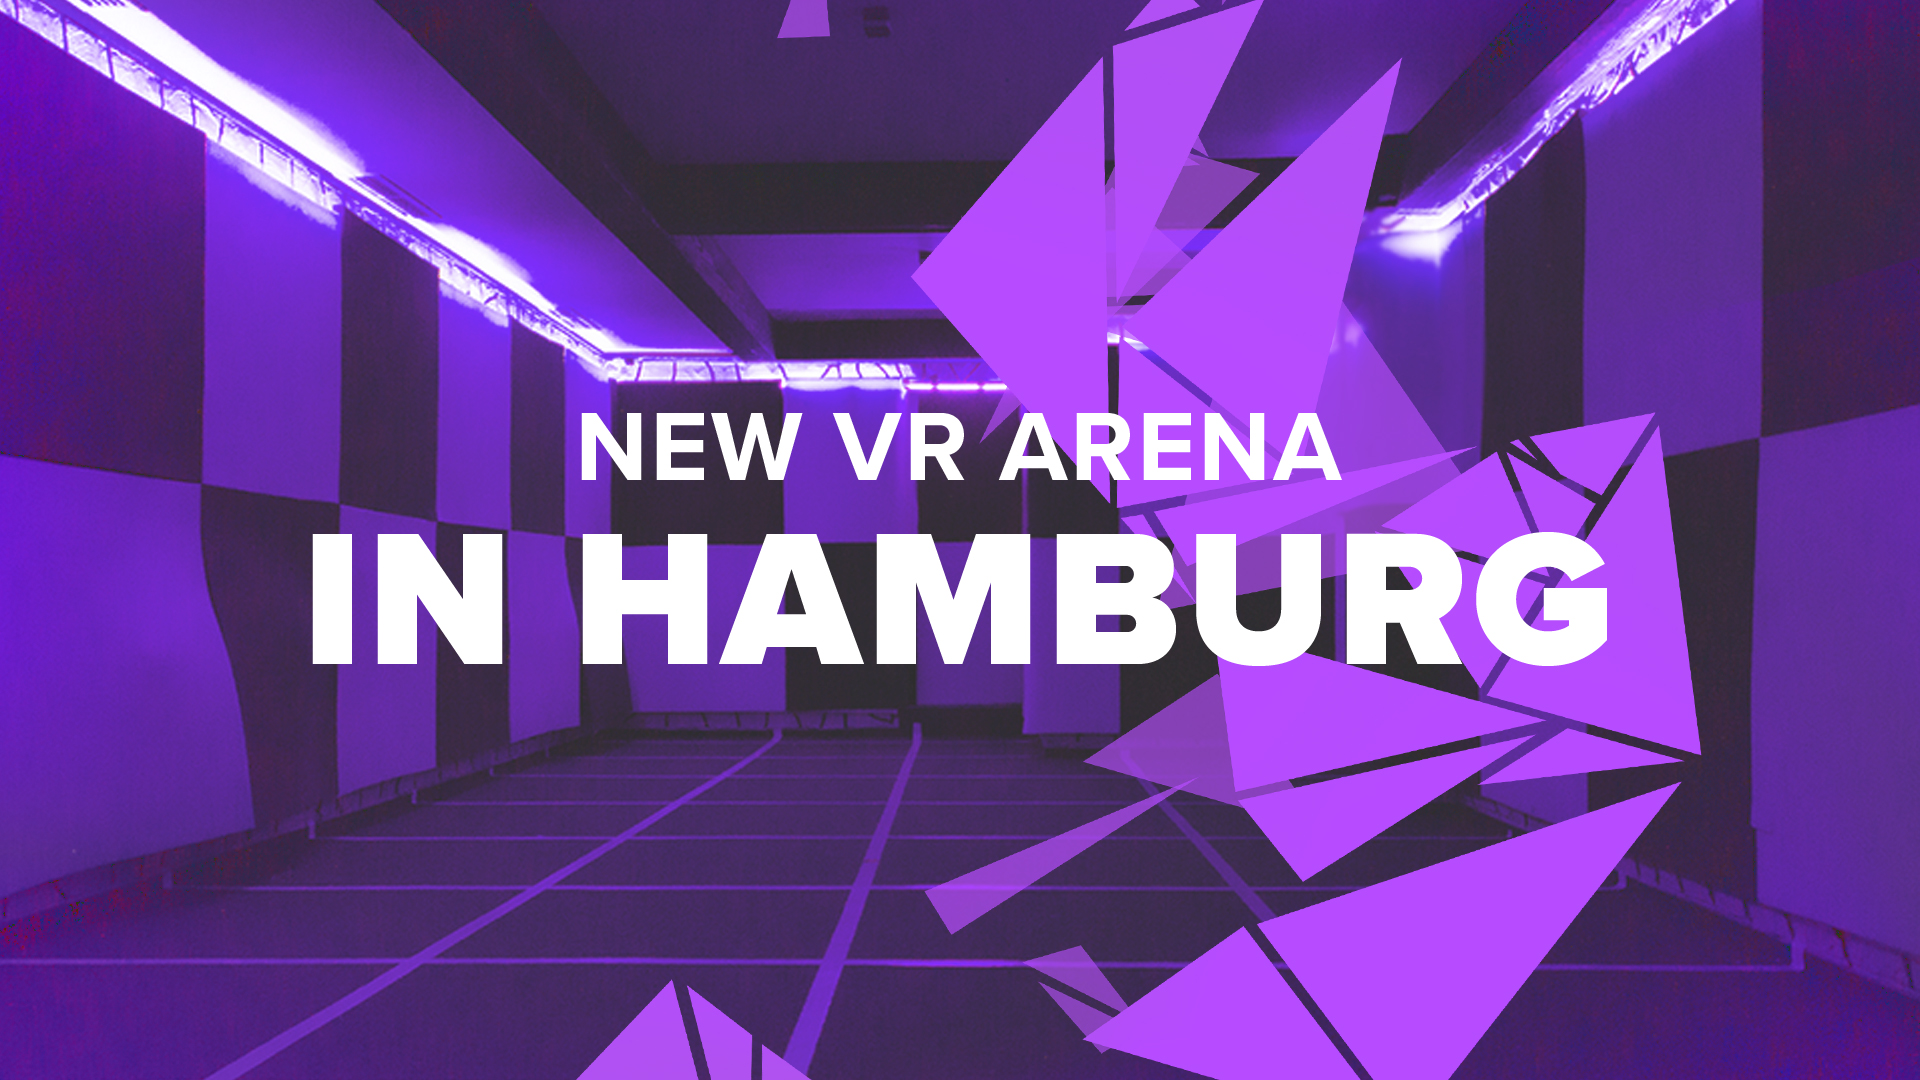 WARSTATION VR arena in Germany